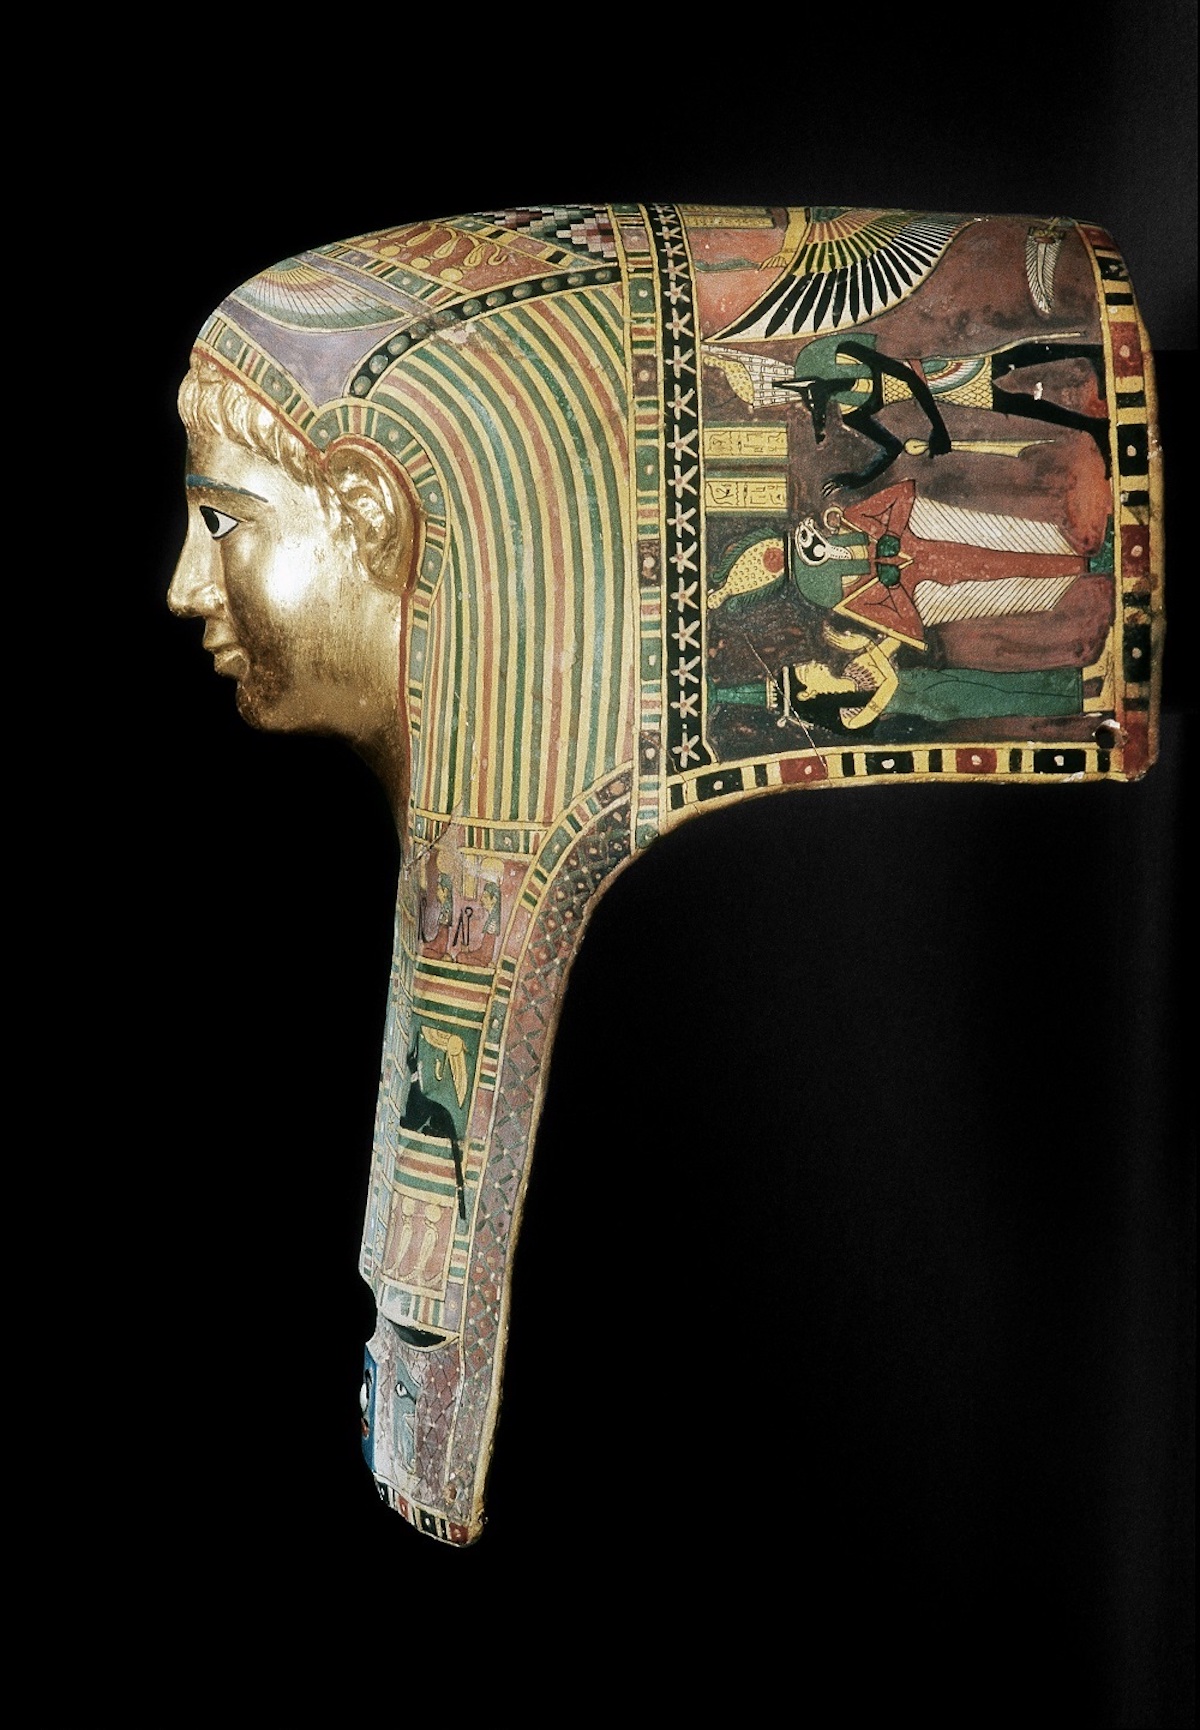 《パレメチュシグのミイラ・マスク》 後50～後100年頃 , © Staatliche Museen zu Berlin
Ägyptisches Museum und Papyrussammlung / M. Büsing
